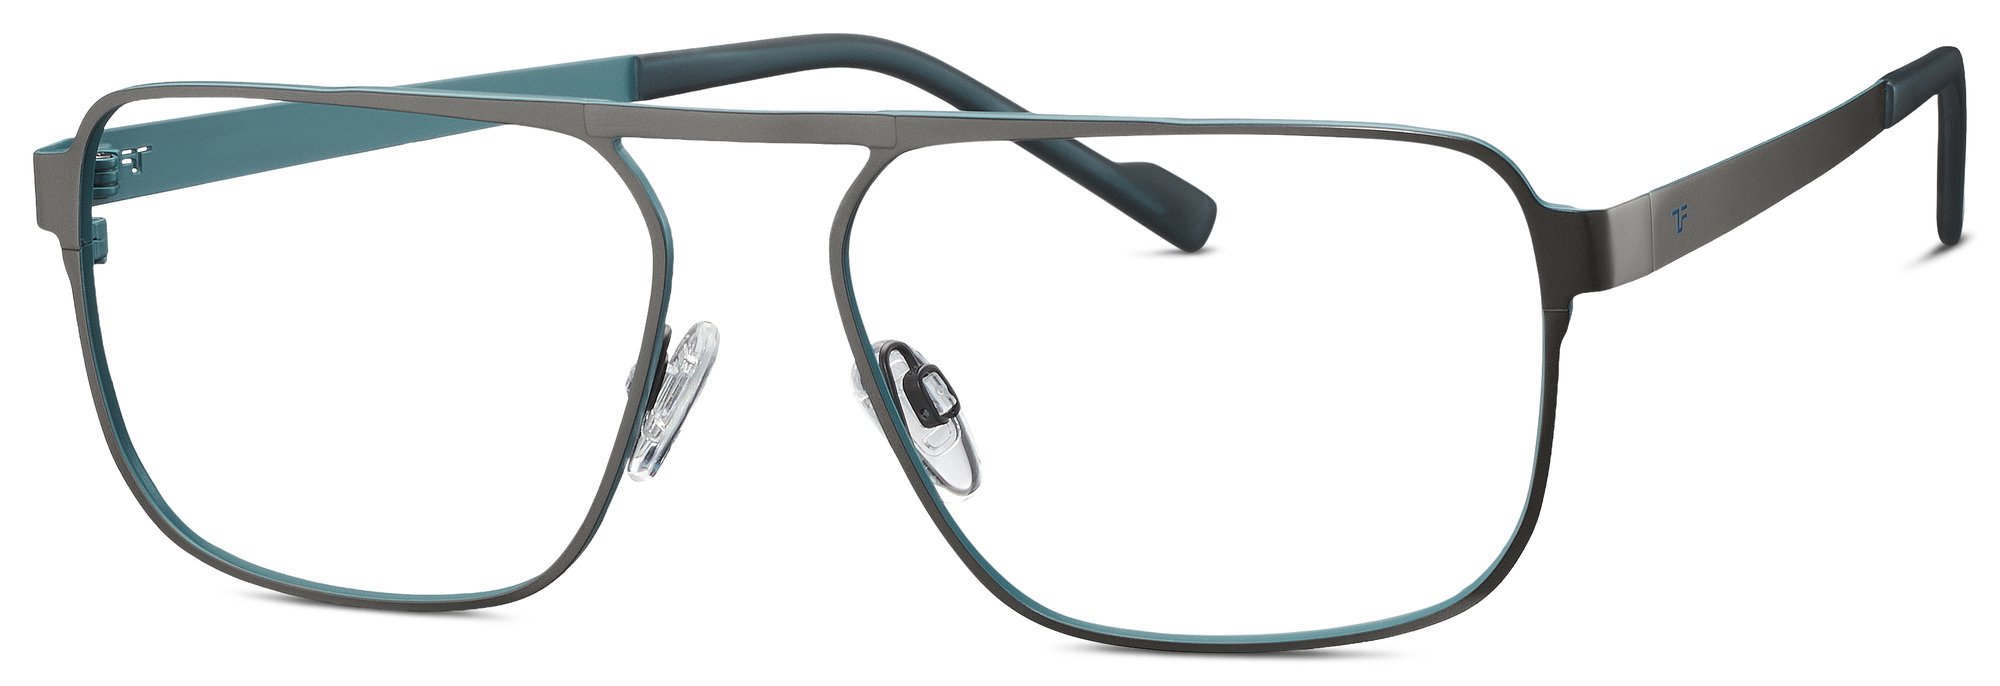 Das Bild zeigt die Korrektionsbrille 820945 30 von der Marke Titanflex in grau.